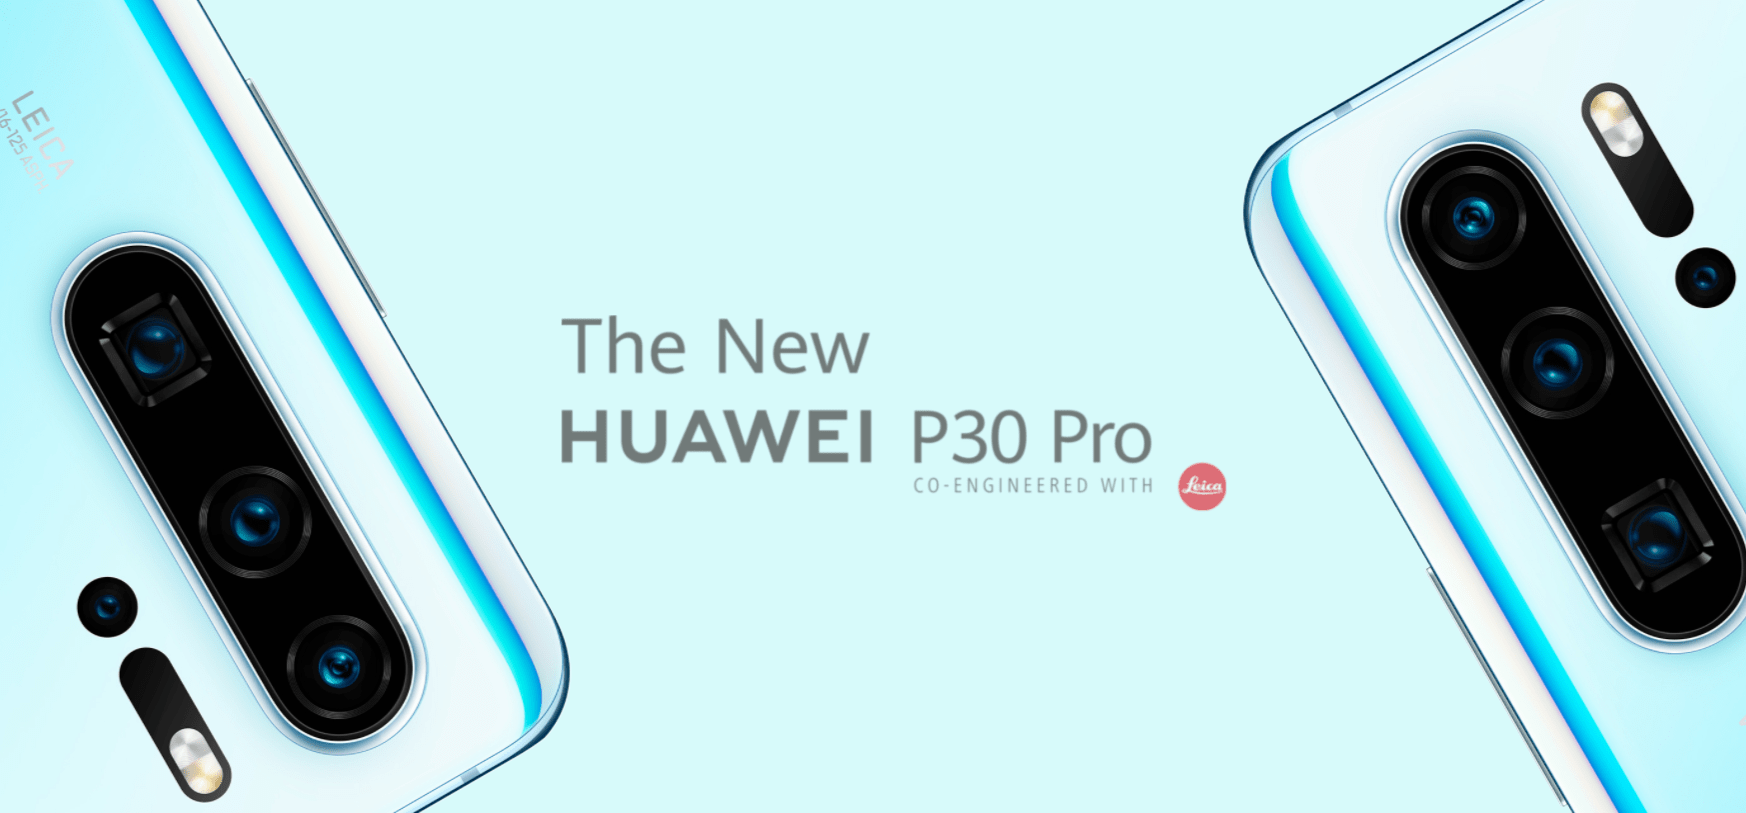 イオシスでHUAWEI P30 Pro HW-02L(ネットワーク利用制限ー)が販売中、税込49,800円